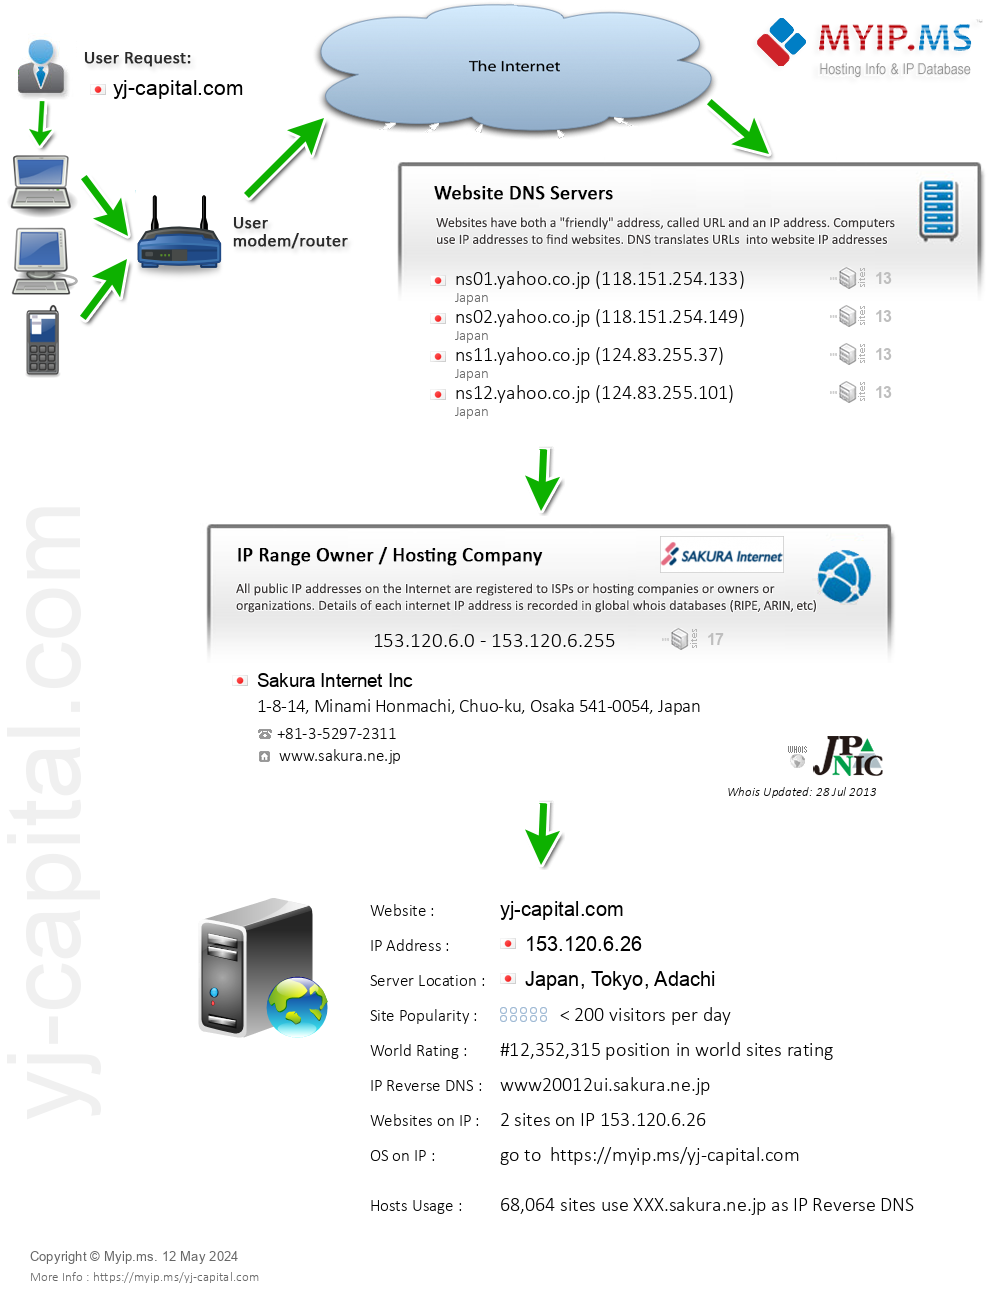 Yj-capital.com - Website Hosting Visual IP Diagram